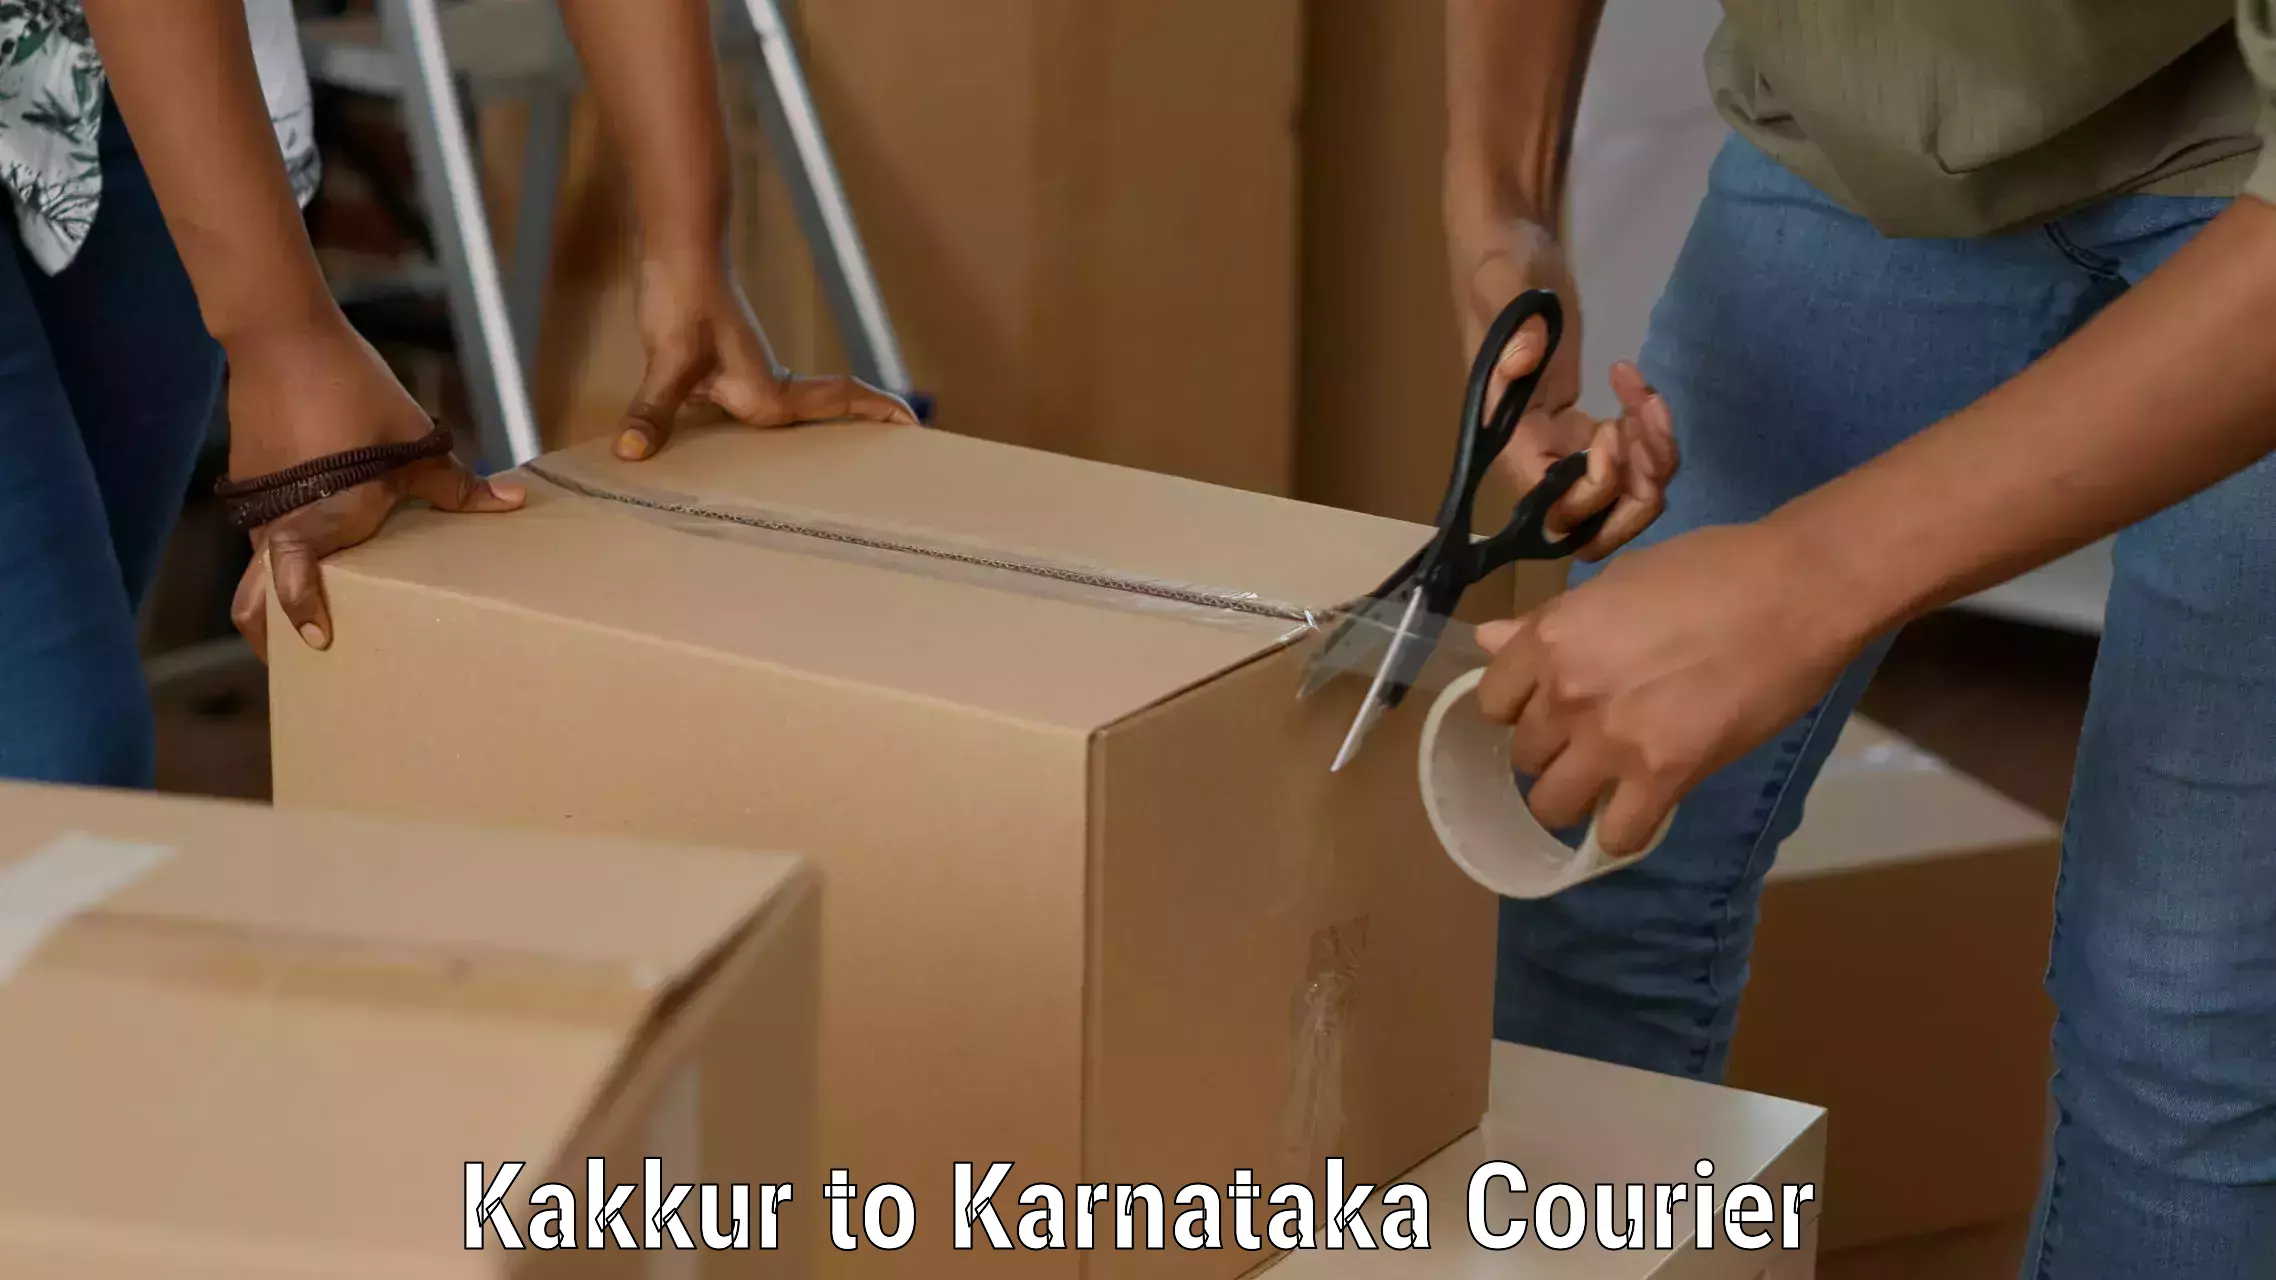 Business logistics support Kakkur to Karwar